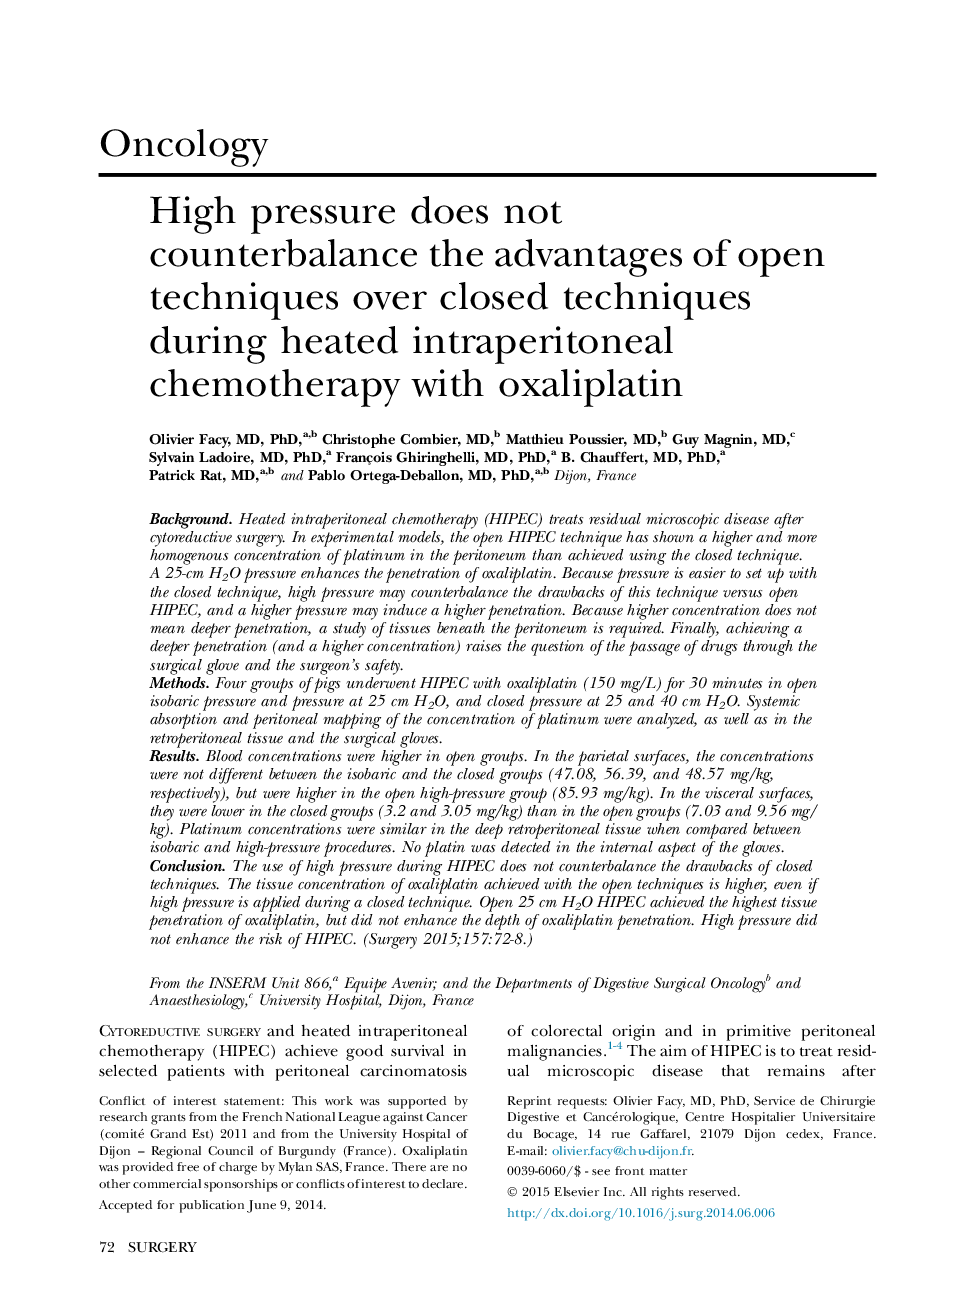 فشار بالا از مزایای تکنیک های باز با تکنیک های بسته در طول شیمیدرمانی گرم داخل صفاقی با اگزال پلاتین خلاص نمی شود 